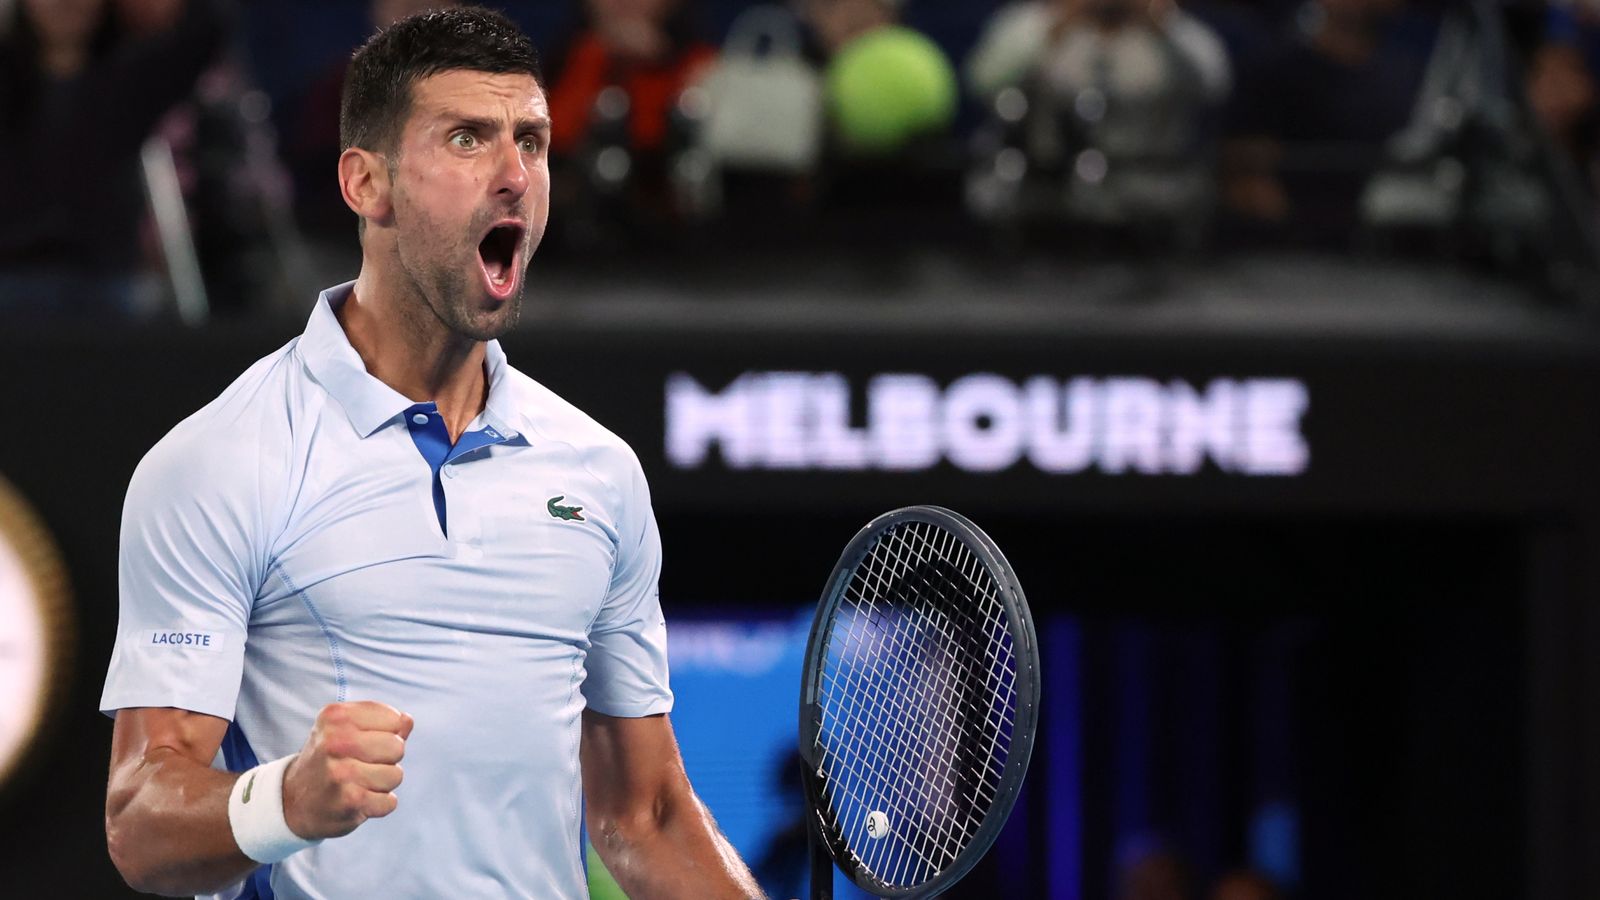 Abierto de Australia: Novak Djokovic iguala el récord de Roger Federer al alcanzar los 58º cuartos de final de Grand Slam en Melbourne |  Noticias de tenis